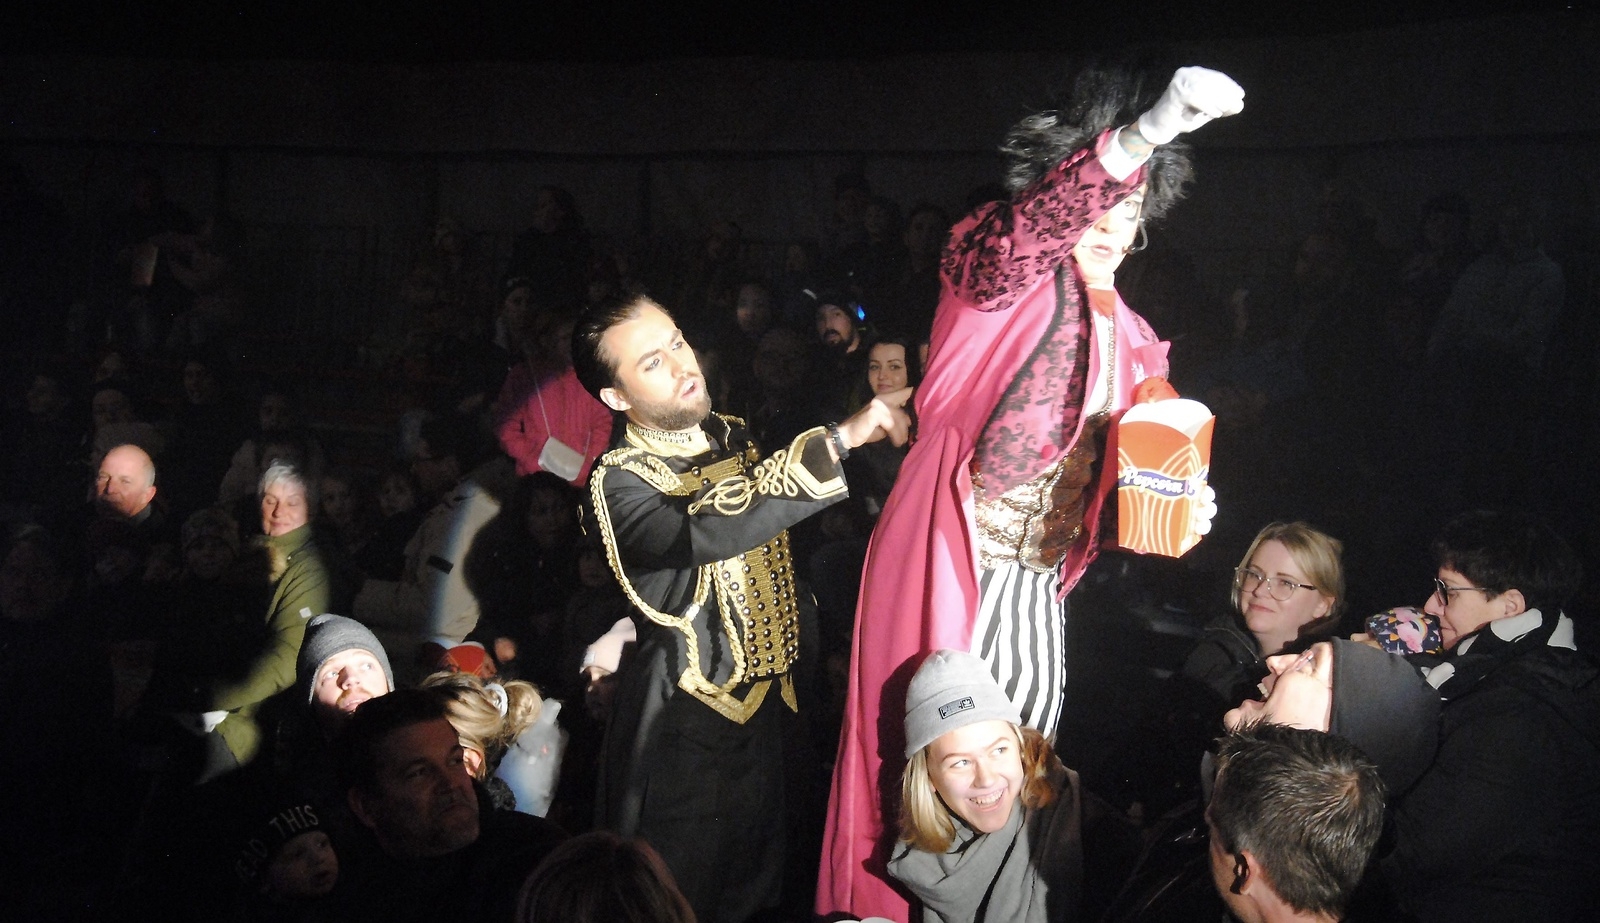 Cirkusdirektör Trolle Rhodin försöker fånga clownen som kastar popcorn på publiken.                             Foto: Stefan Olofson